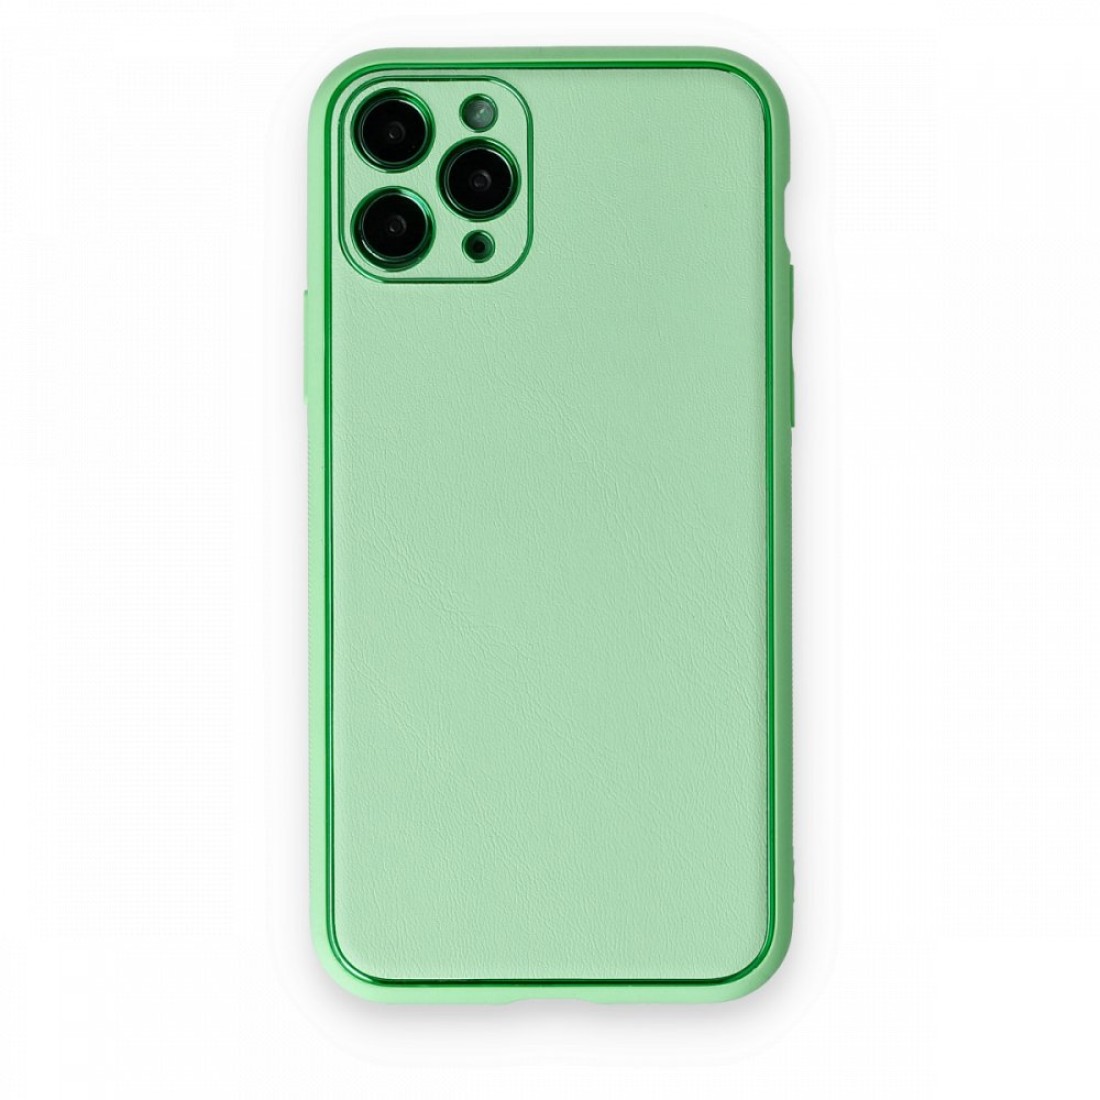 Apple iPhone 11 Pro Kılıf Coco Deri Silikon Kapak - Açık Yeşil